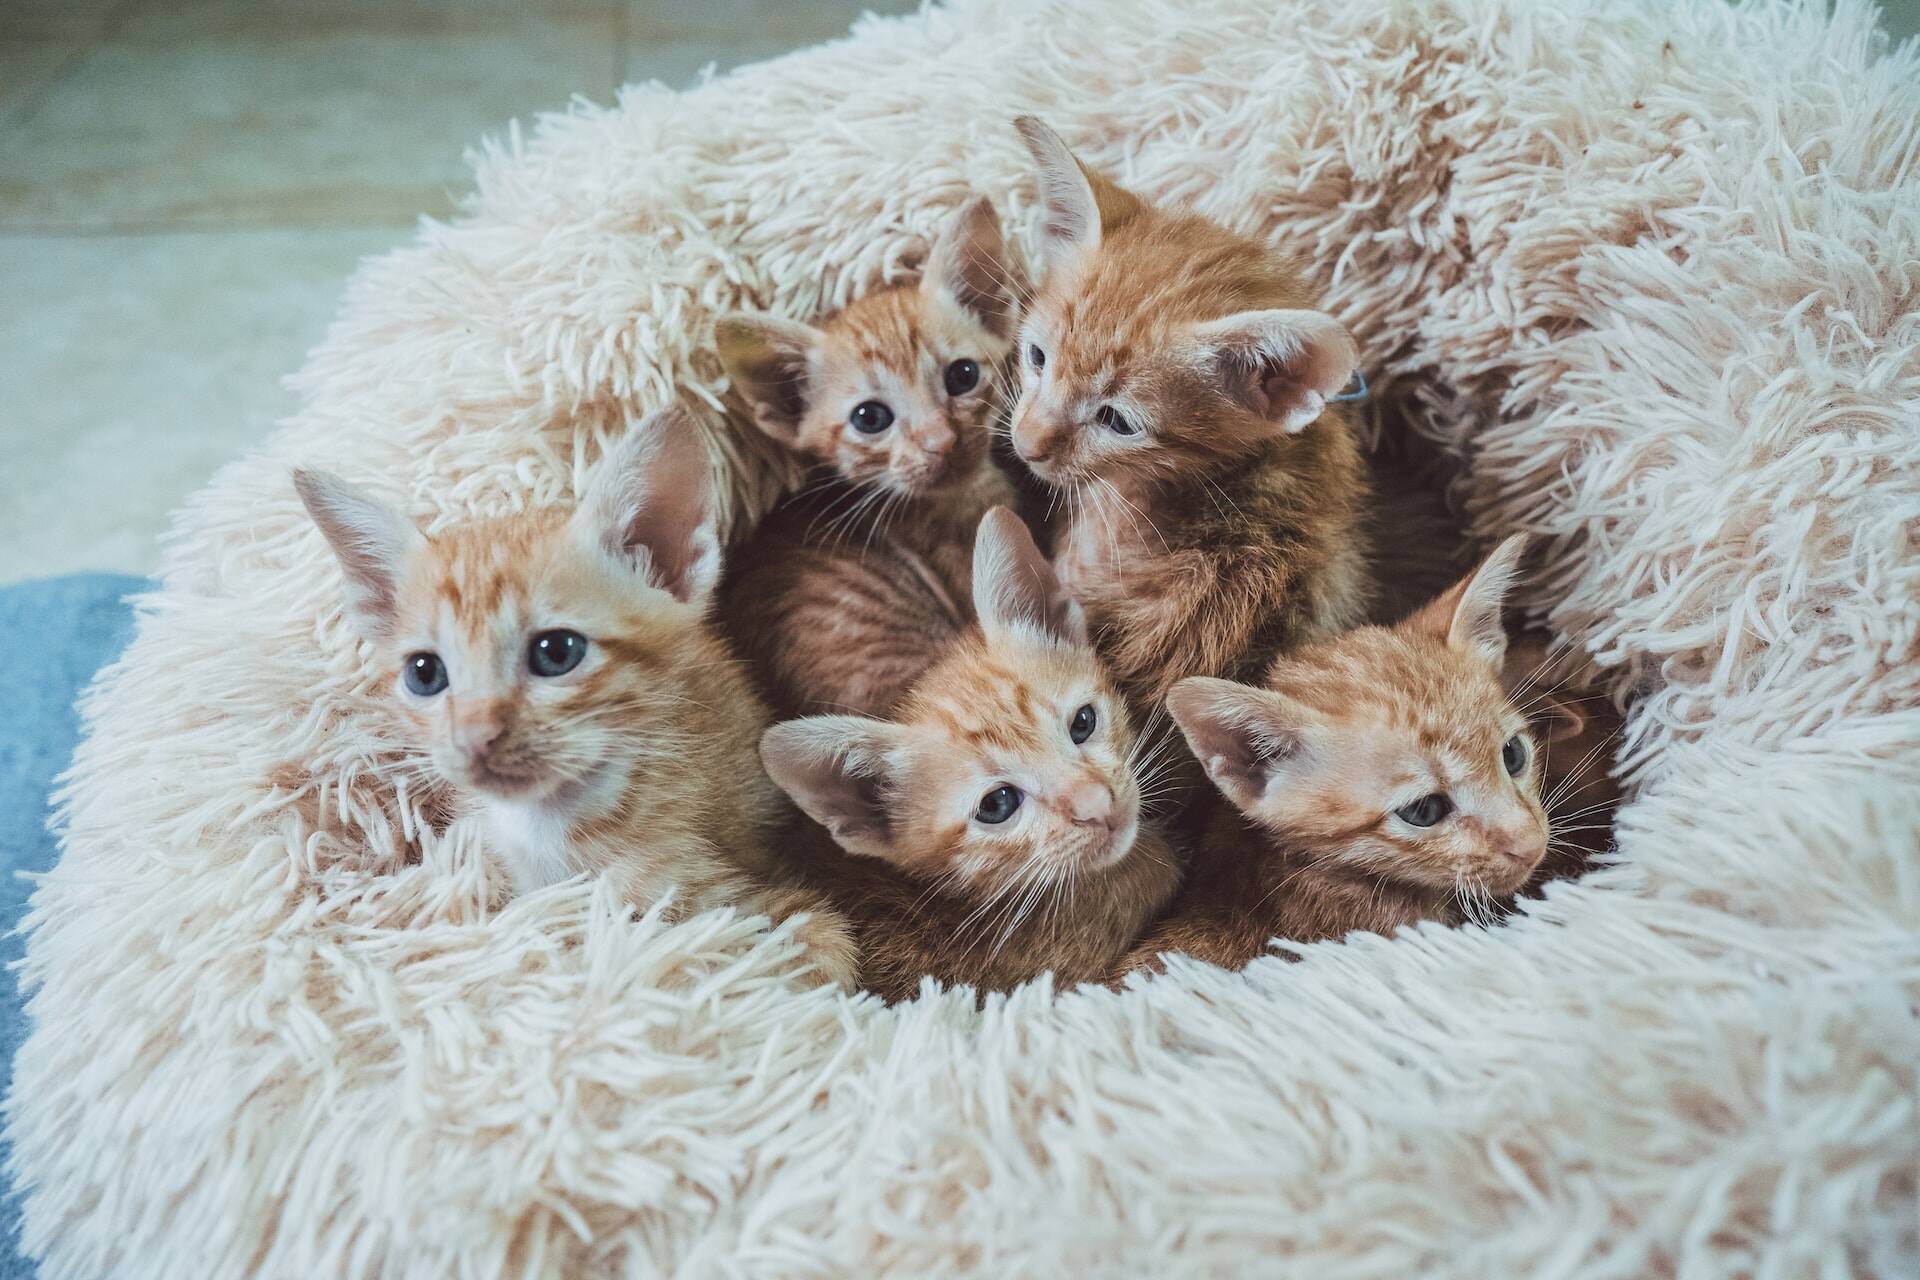 A litter of kittens in a pillow